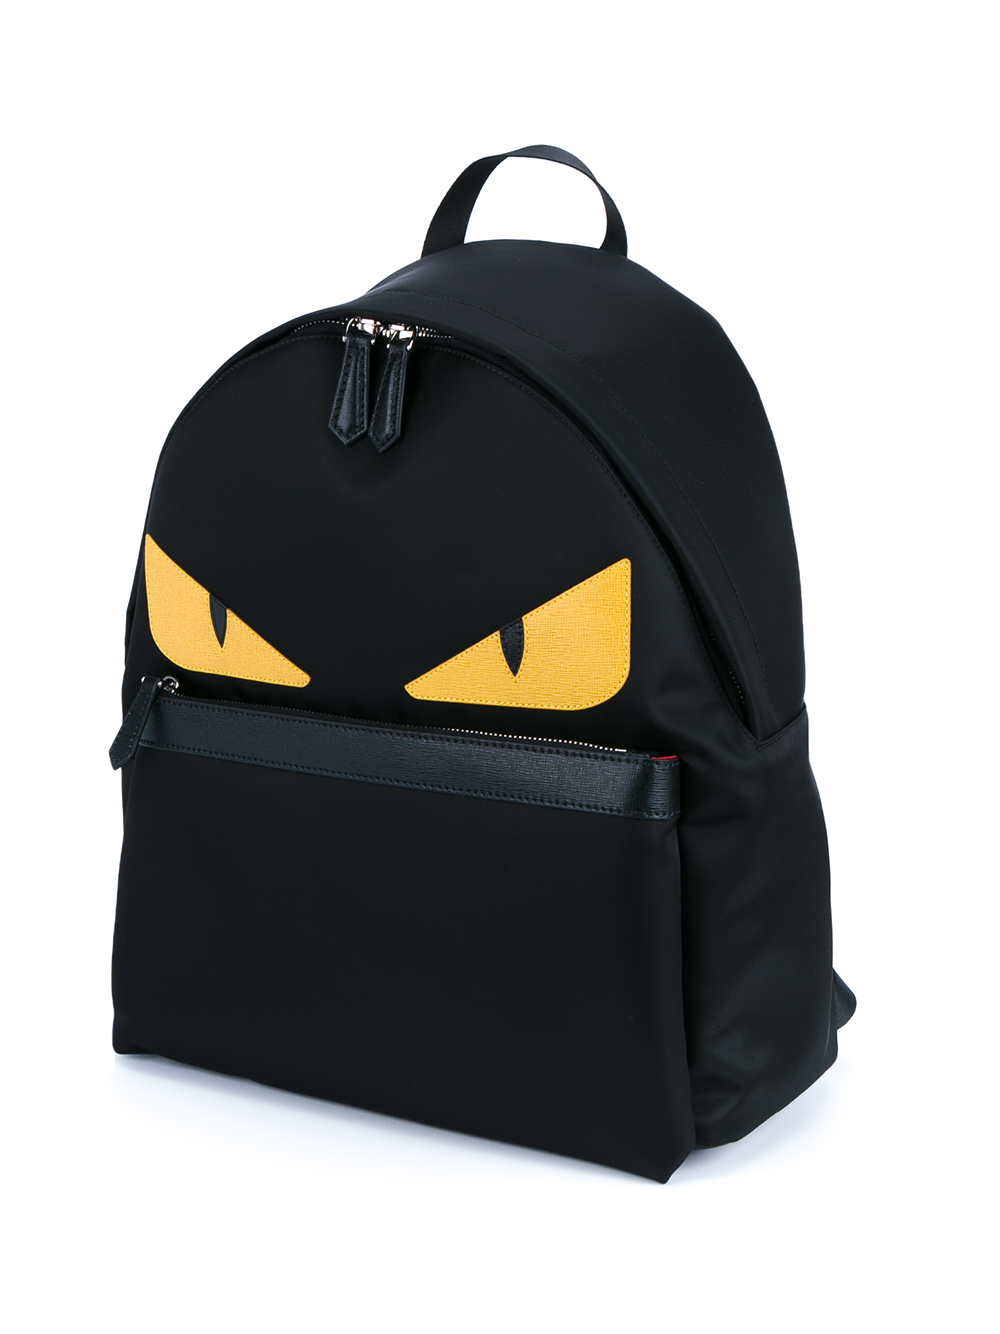 Fendi Monster Backpack in Black Yellow (Black) for Men - Lyst